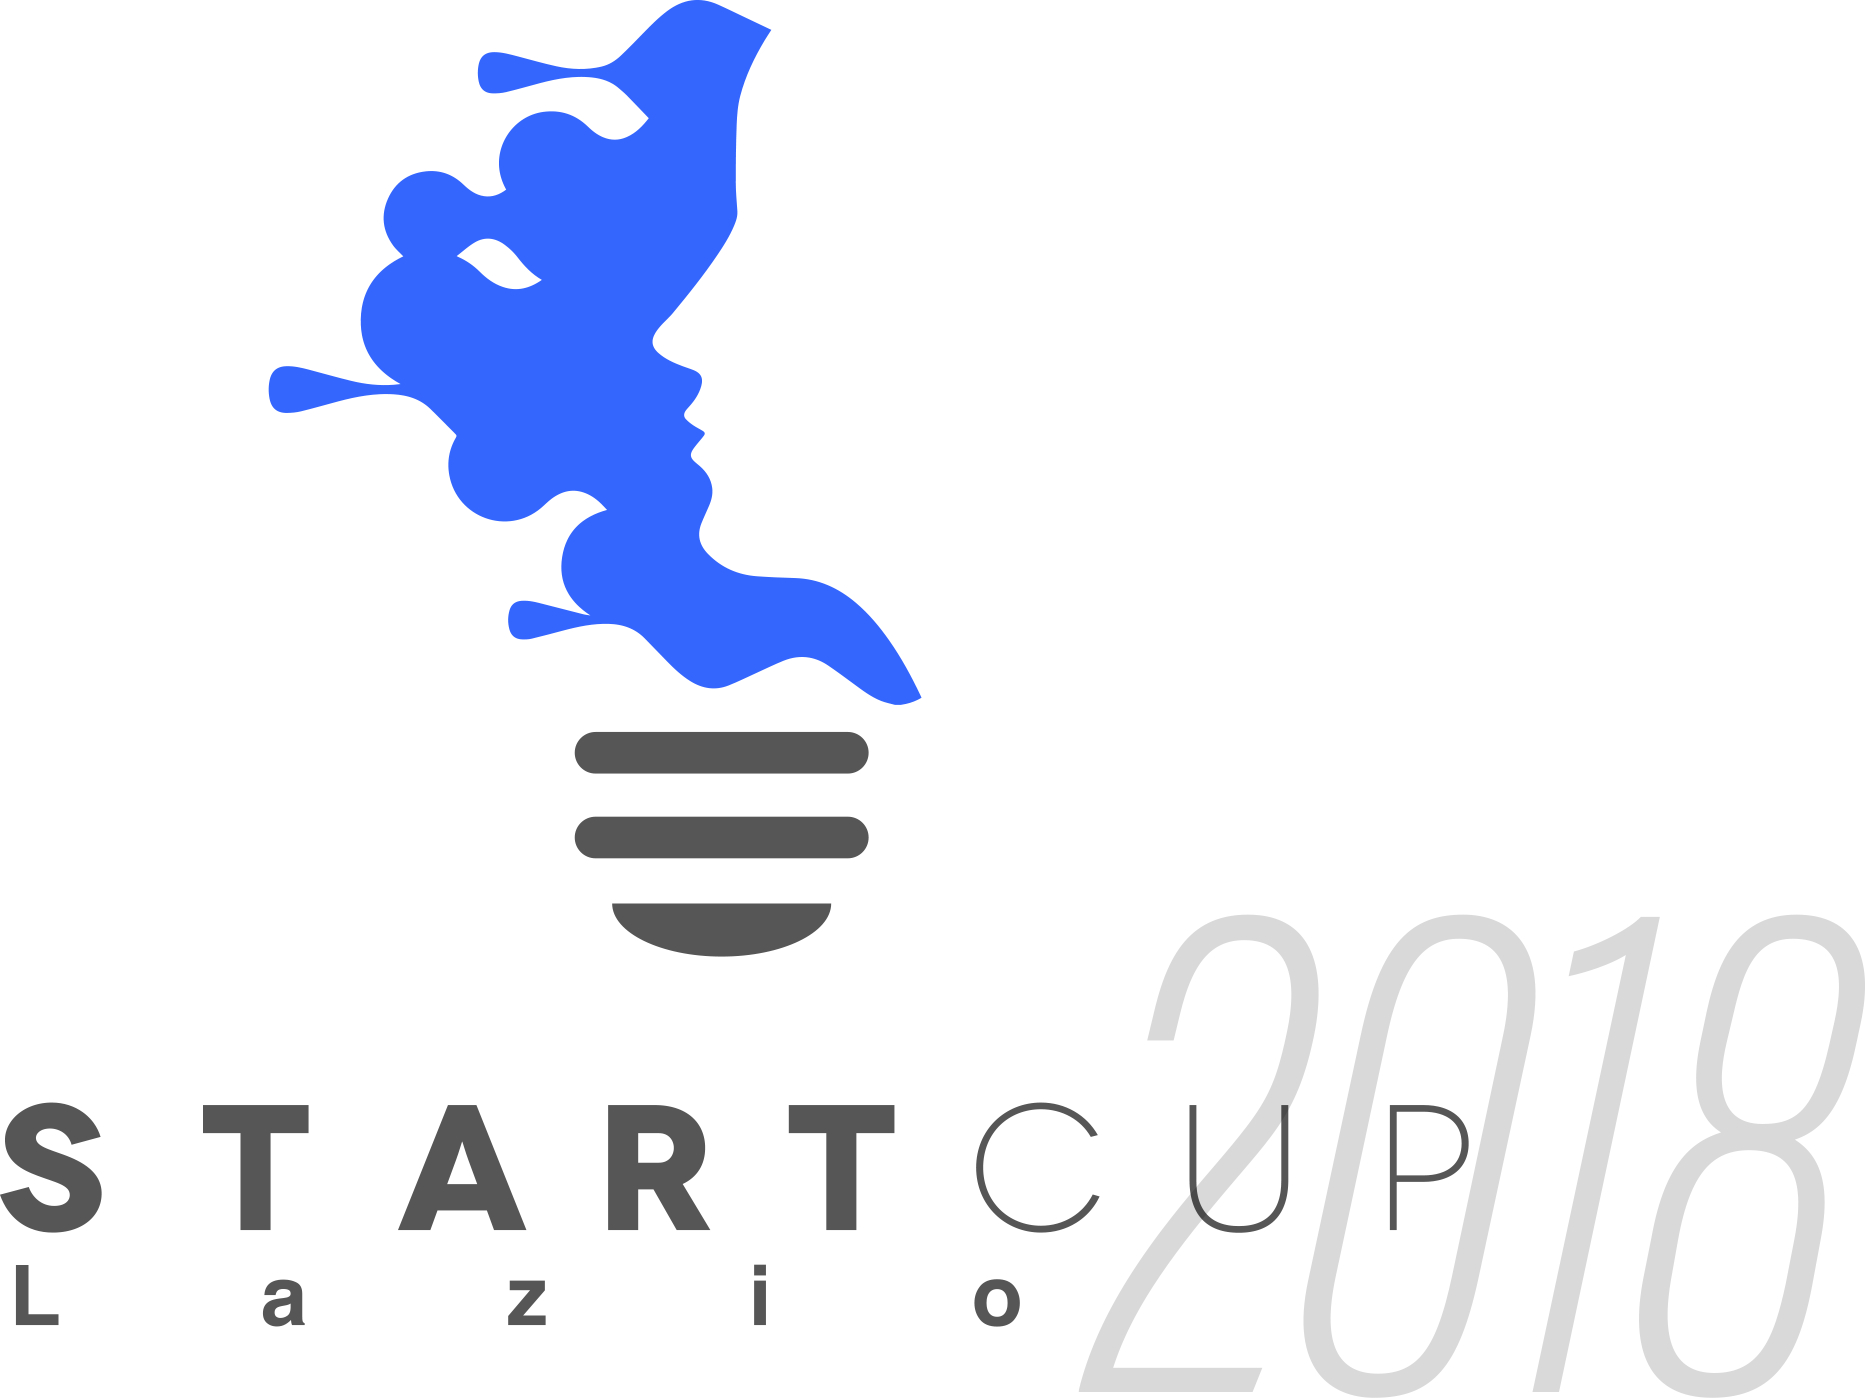 Start Cup Lazio 2018, fino al 17 luglio per candidare la propria idea